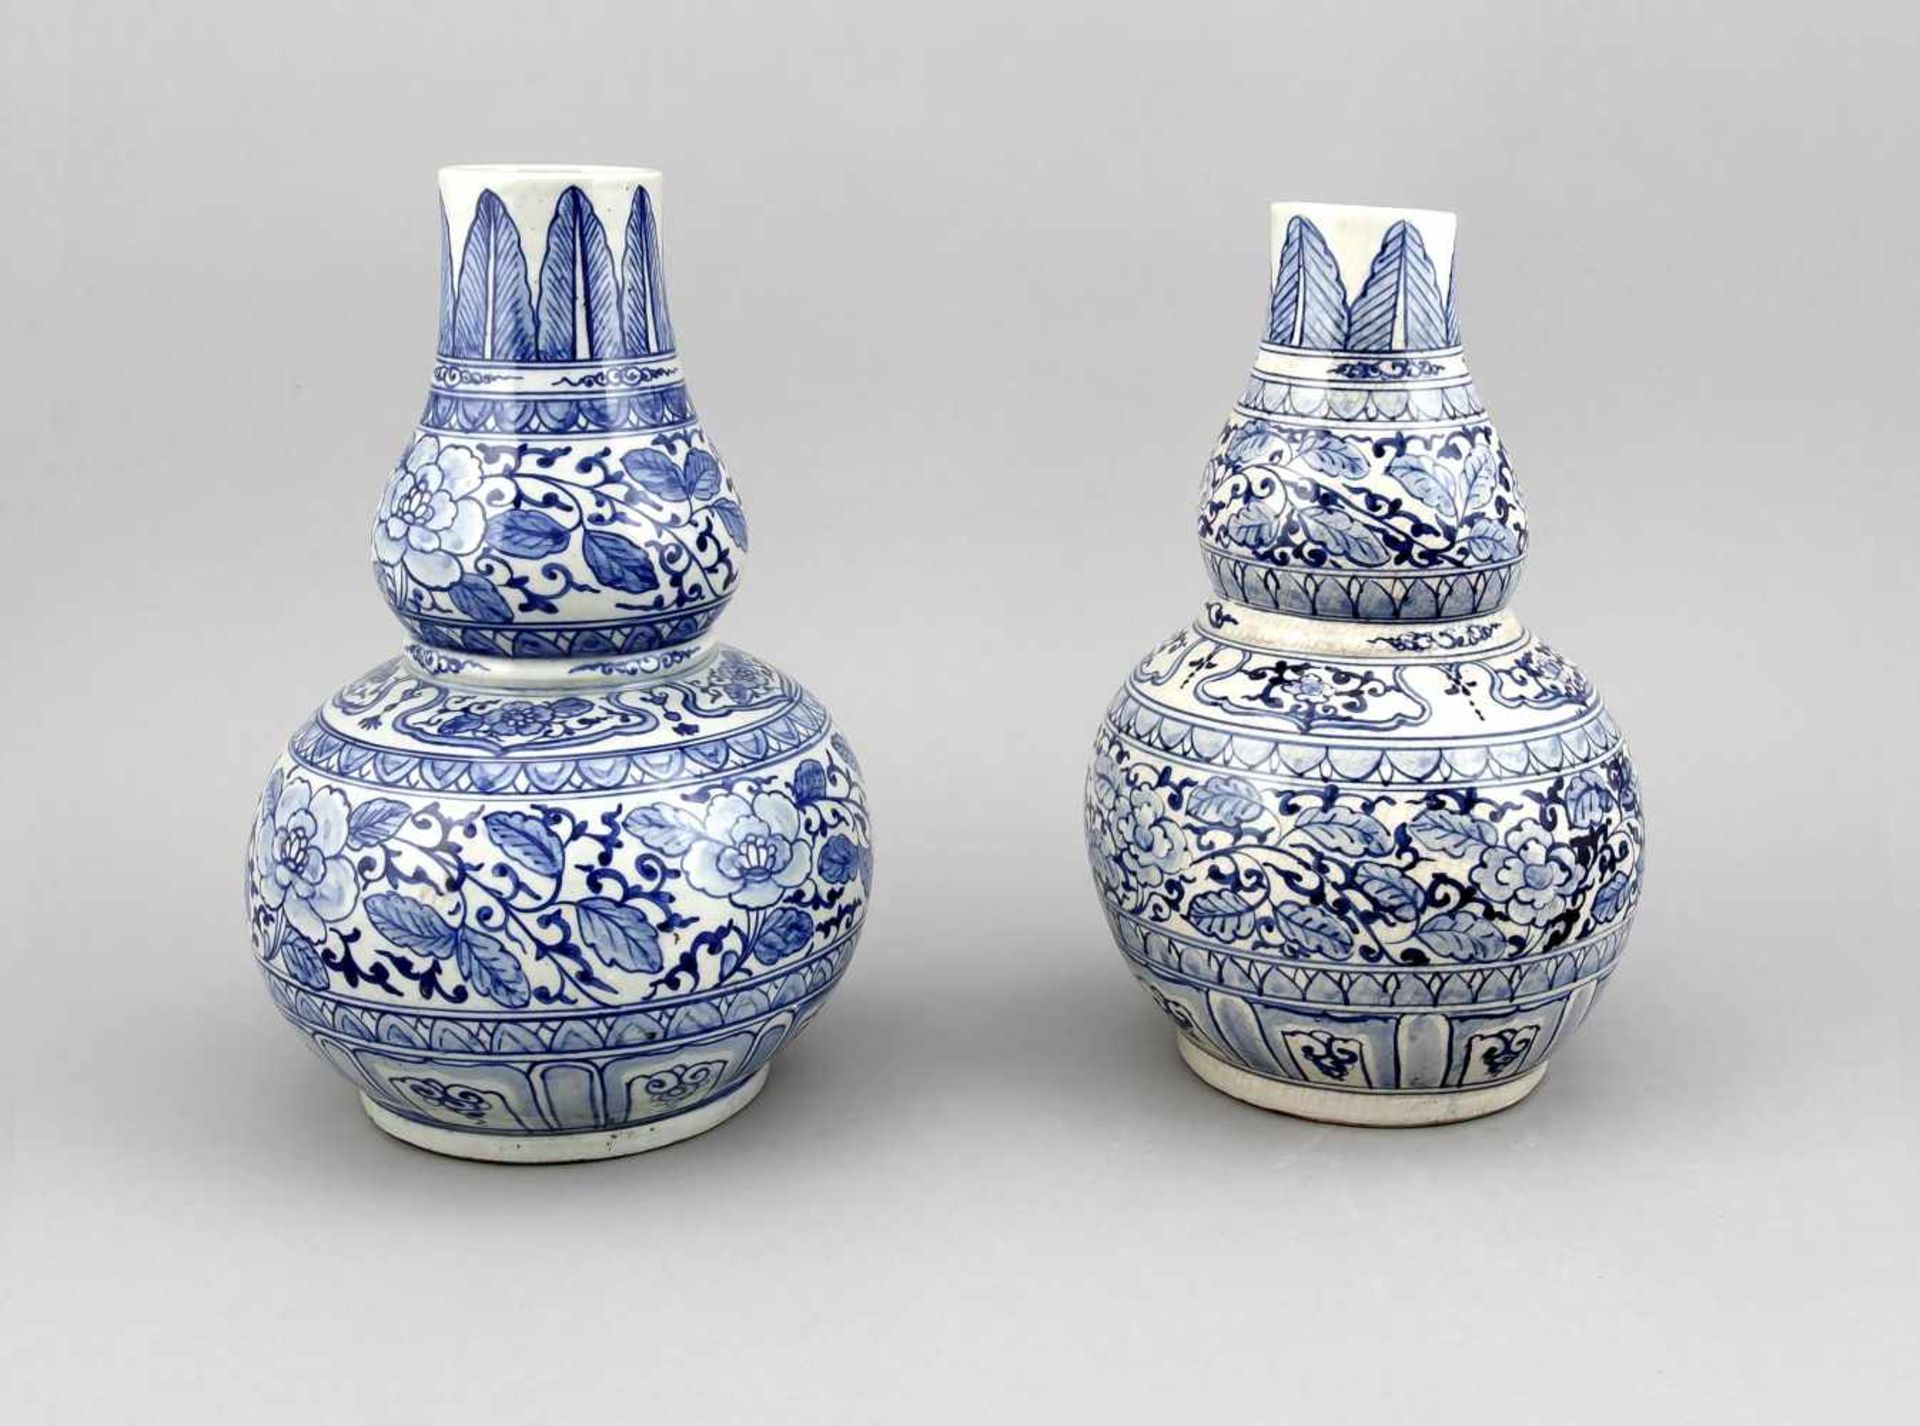 Paar Flaschenkürbis-Vasen, China, 19. Jh., Dekor in Unterglasurblau, Ranken undKartuschenfriese,